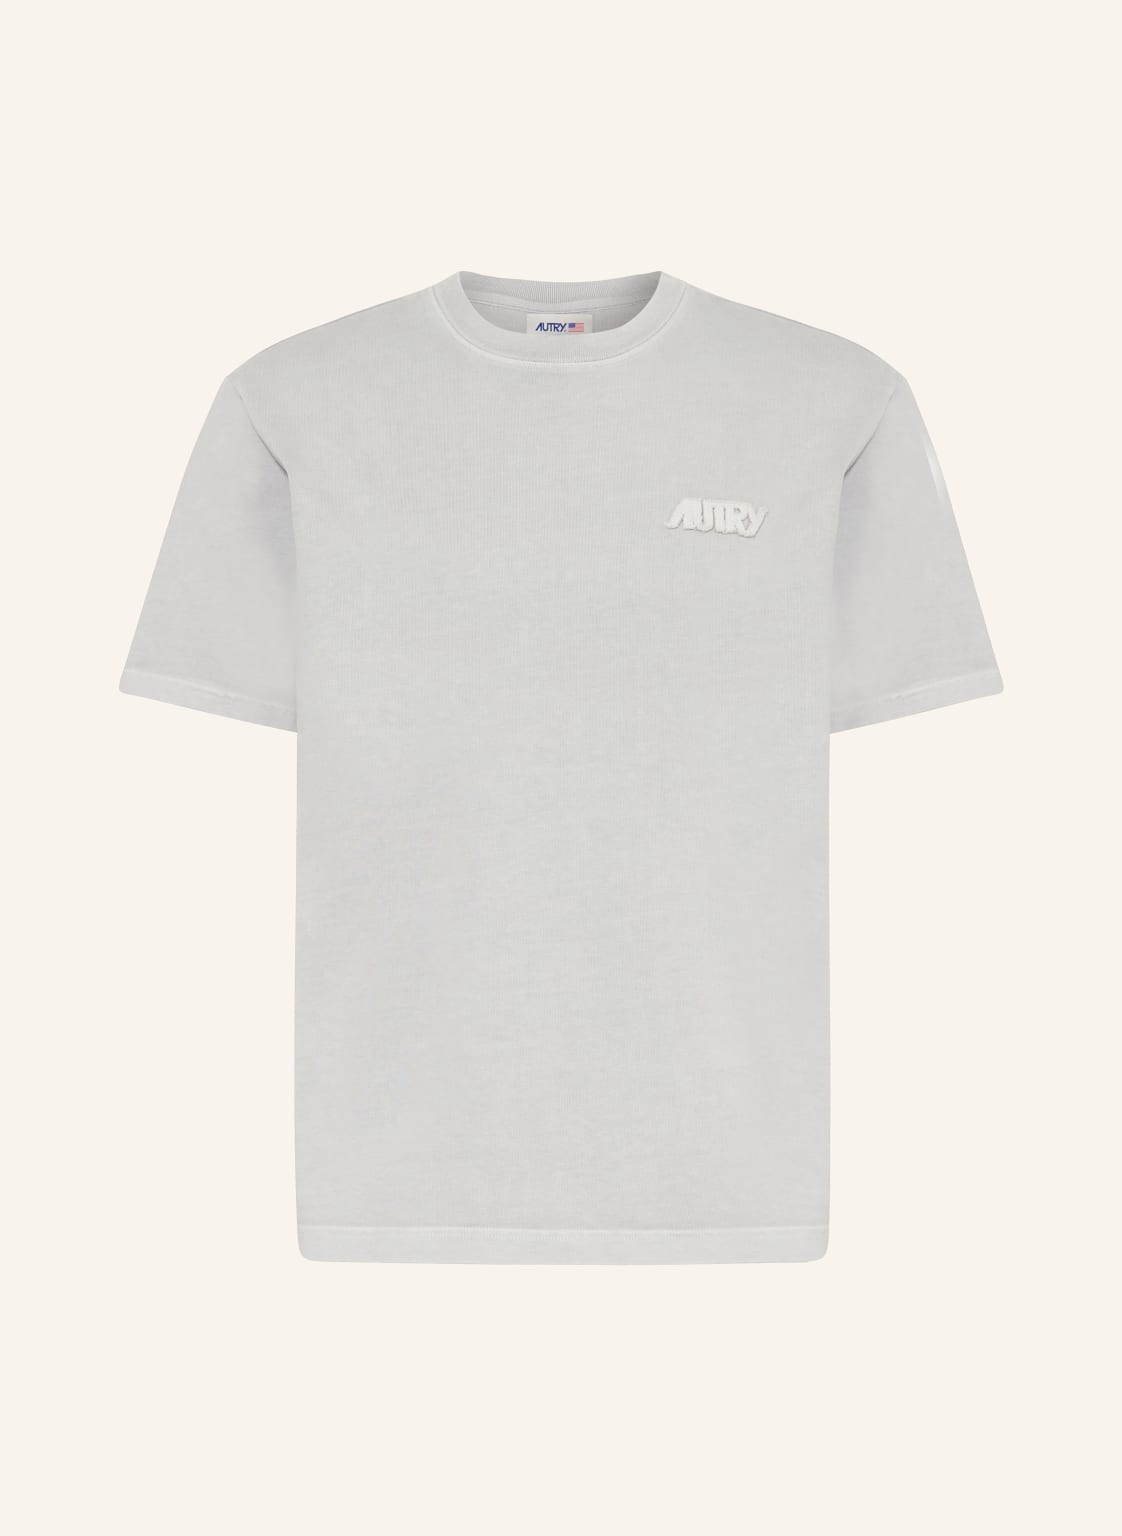 Autry T-Shirt grau von AUTRY